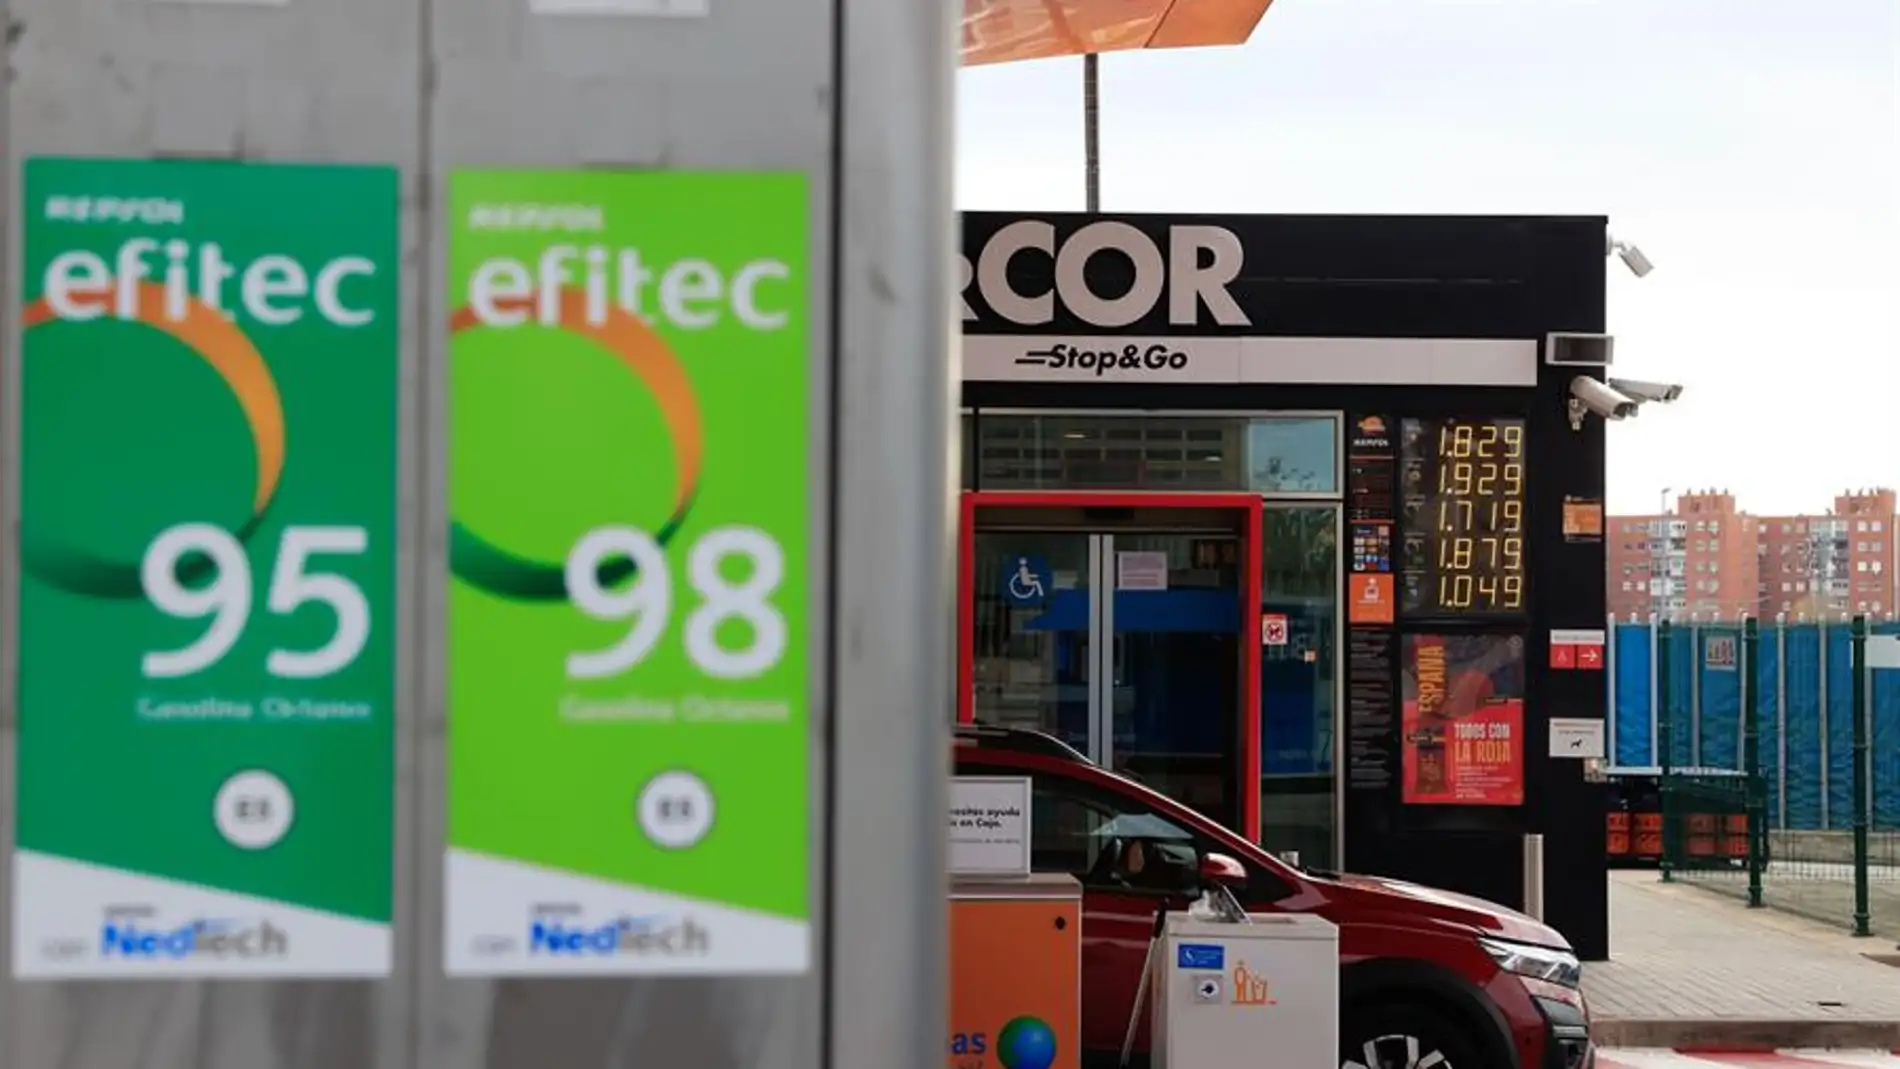 El precio de la gasolina sigue en descenso mientras continúa la duda sobre la continuidad de la bonificación